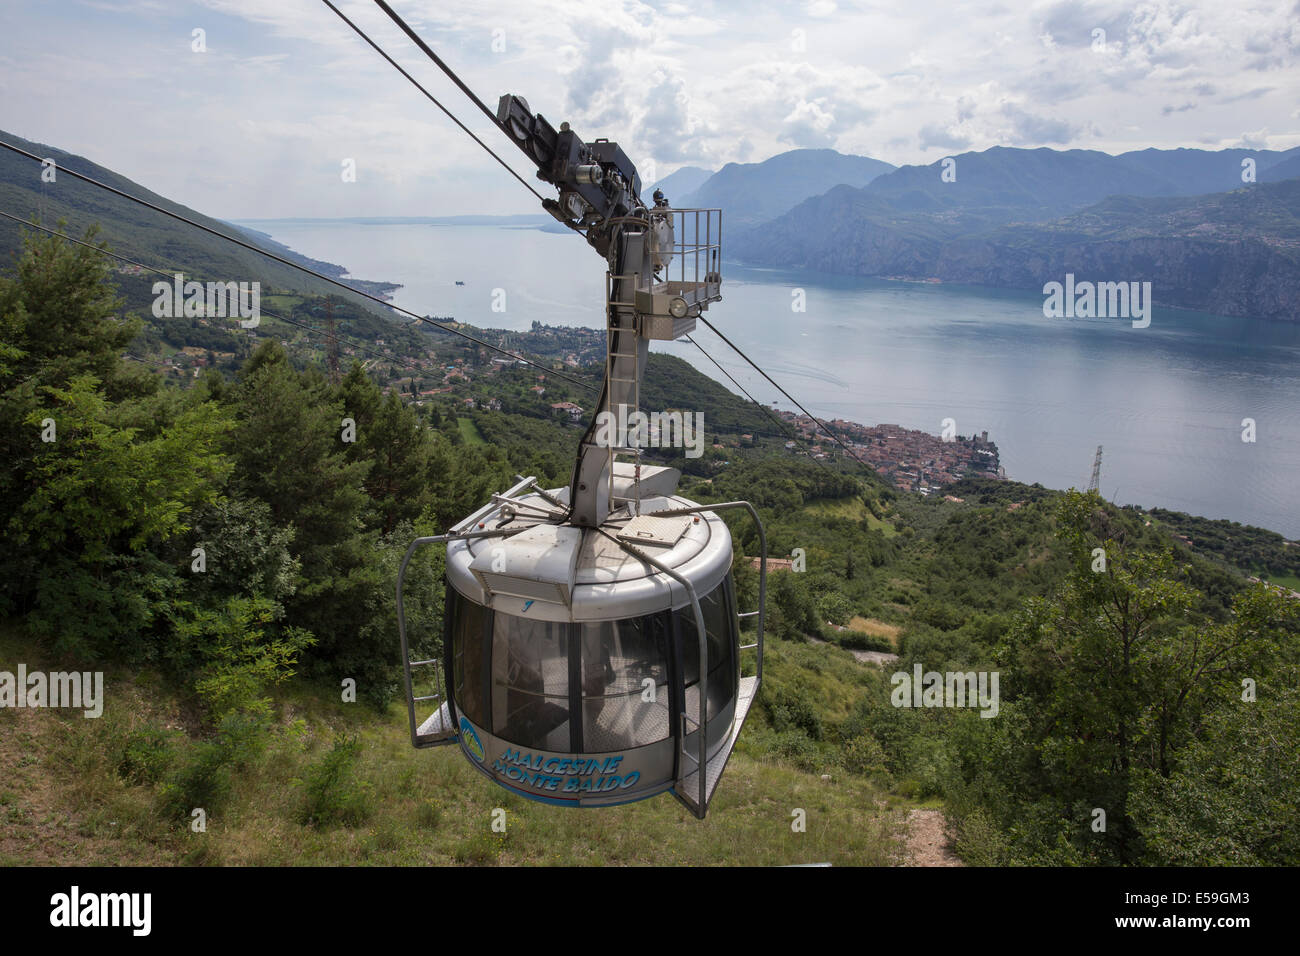 Cable car ascending Monte Baldo, Malcesine, Lake Garda, Italy. Stock Photo